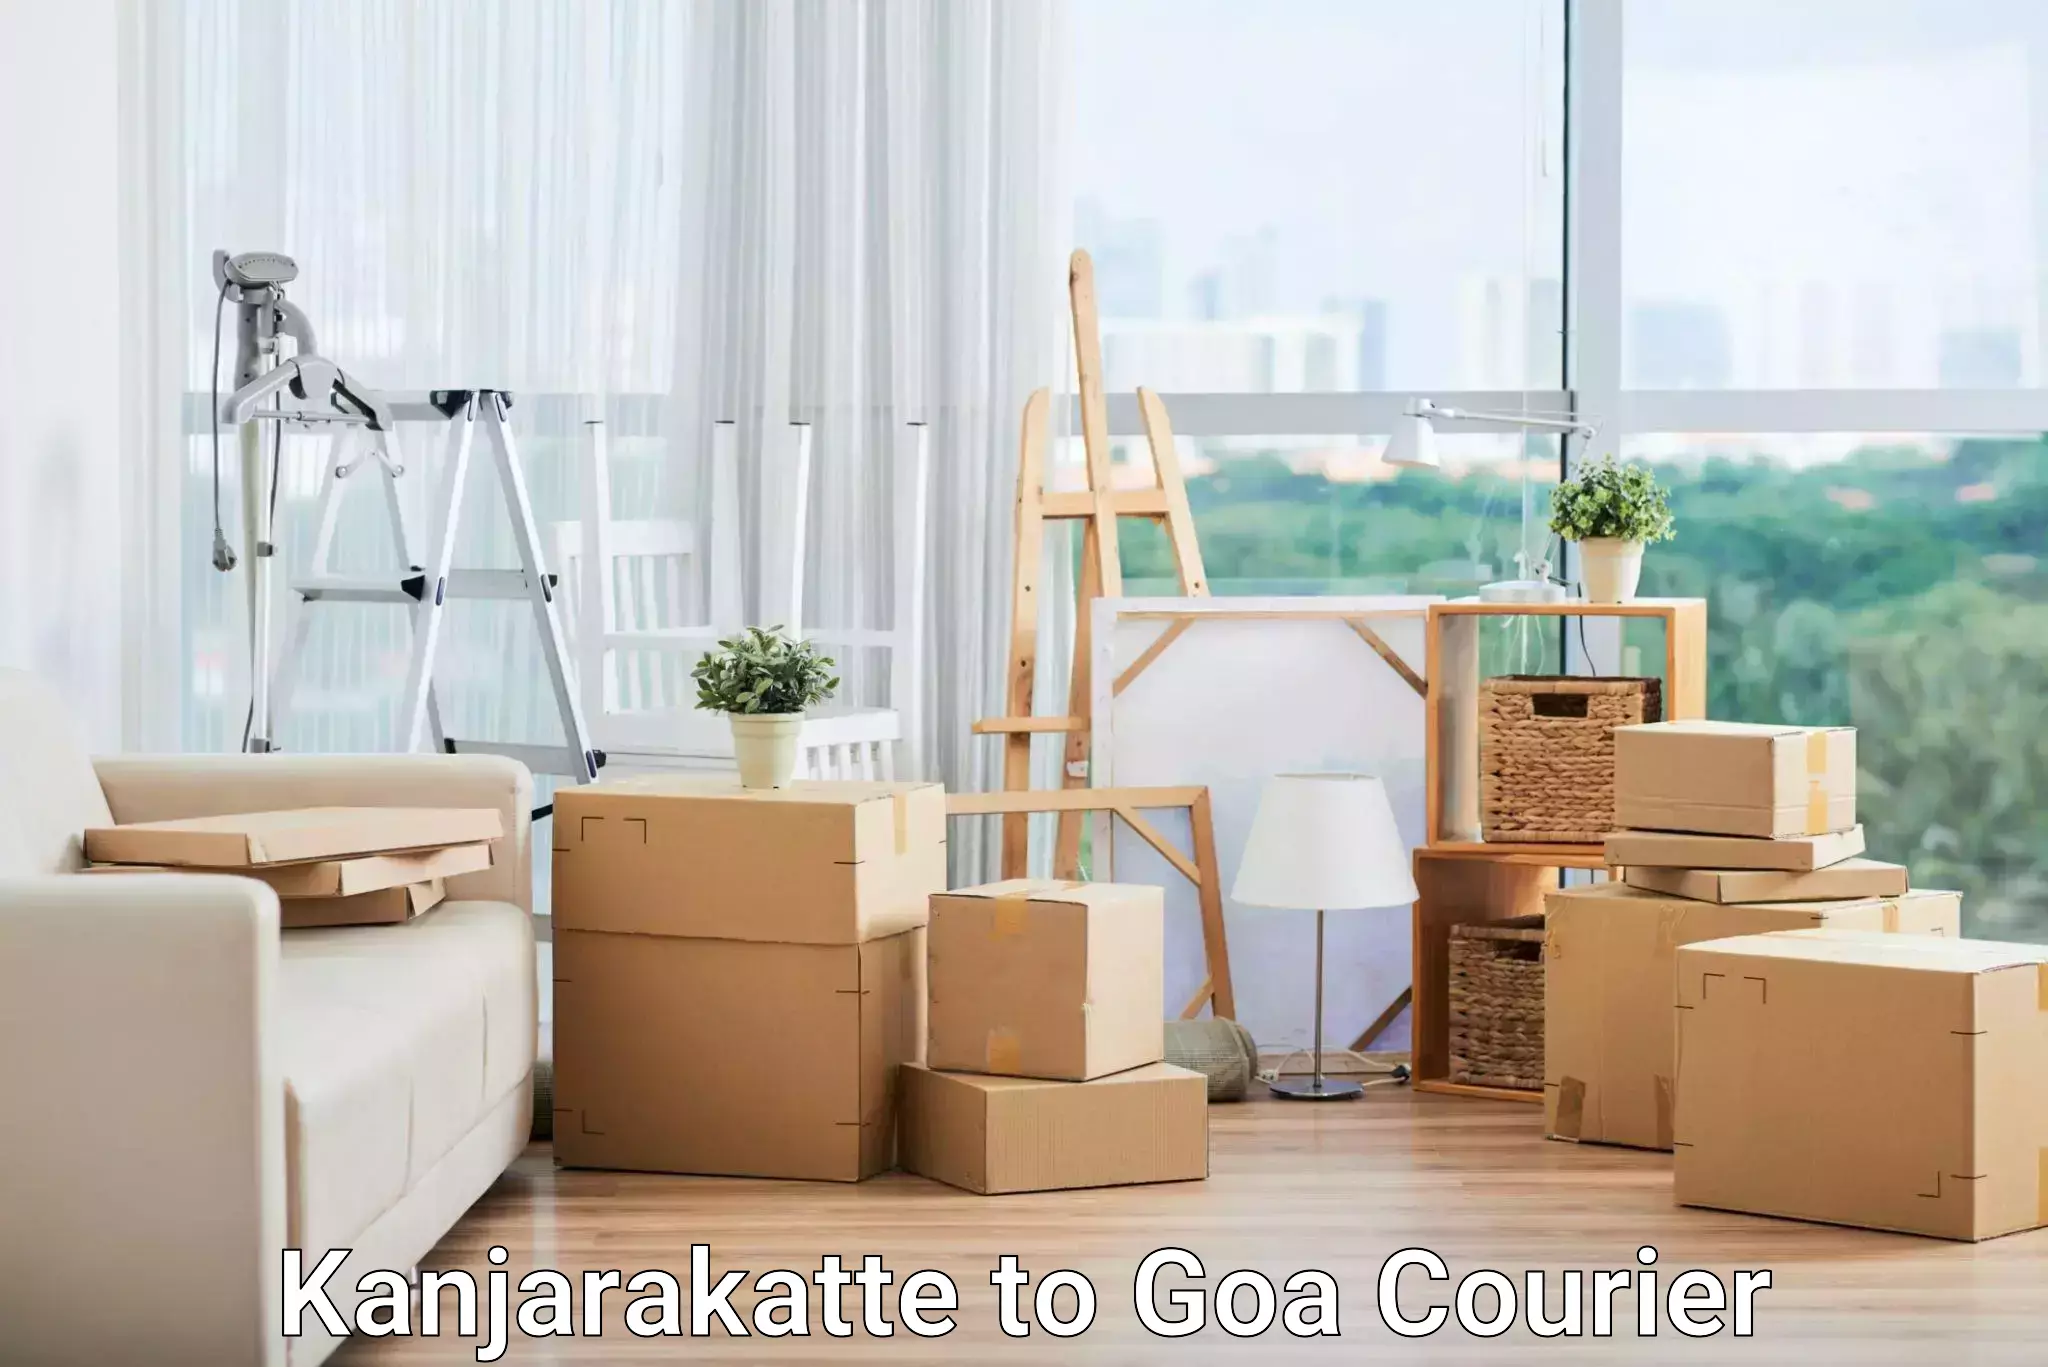 Professional courier handling in Kanjarakatte to NIT Goa